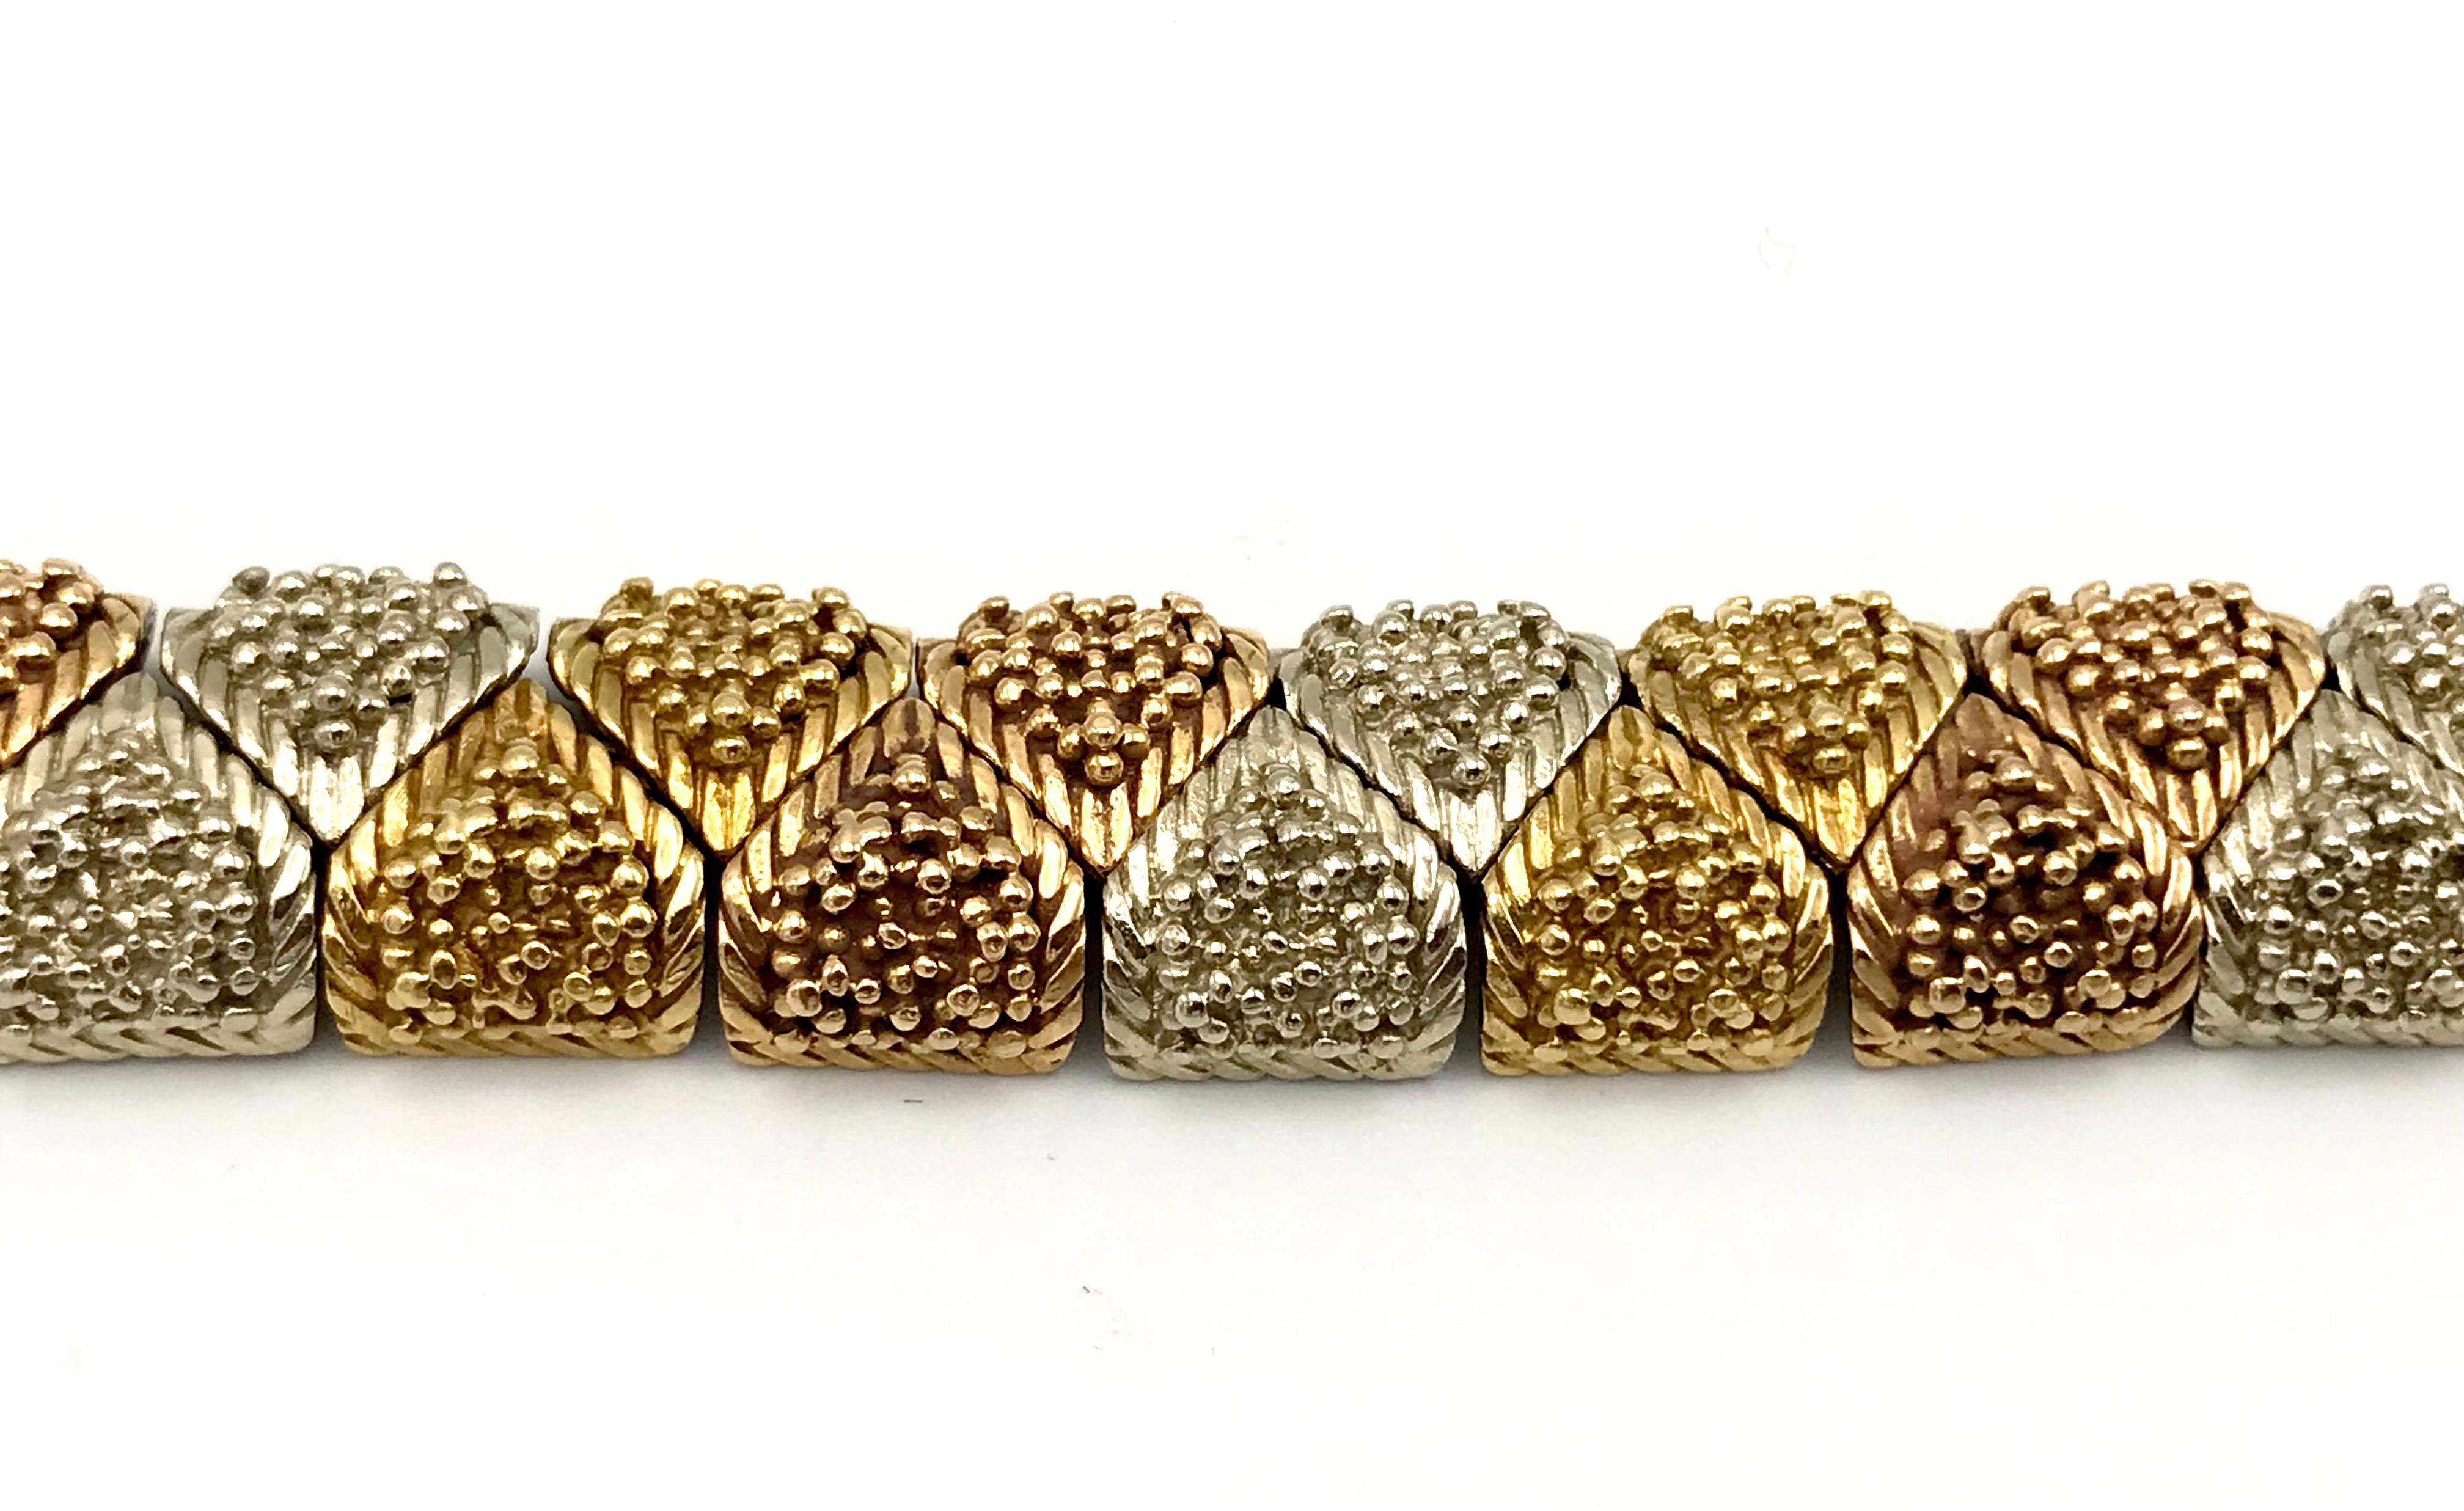 Bracelet Bulgari vintage (c.1970) en or jaune, blanc et rose 18k texturé. Les sections connectées rendent le bracelet flexible. Estampillé de la marque du fabricant Bulgari et d'un poinçon pour l'or 18k.
Mesures : 7.25